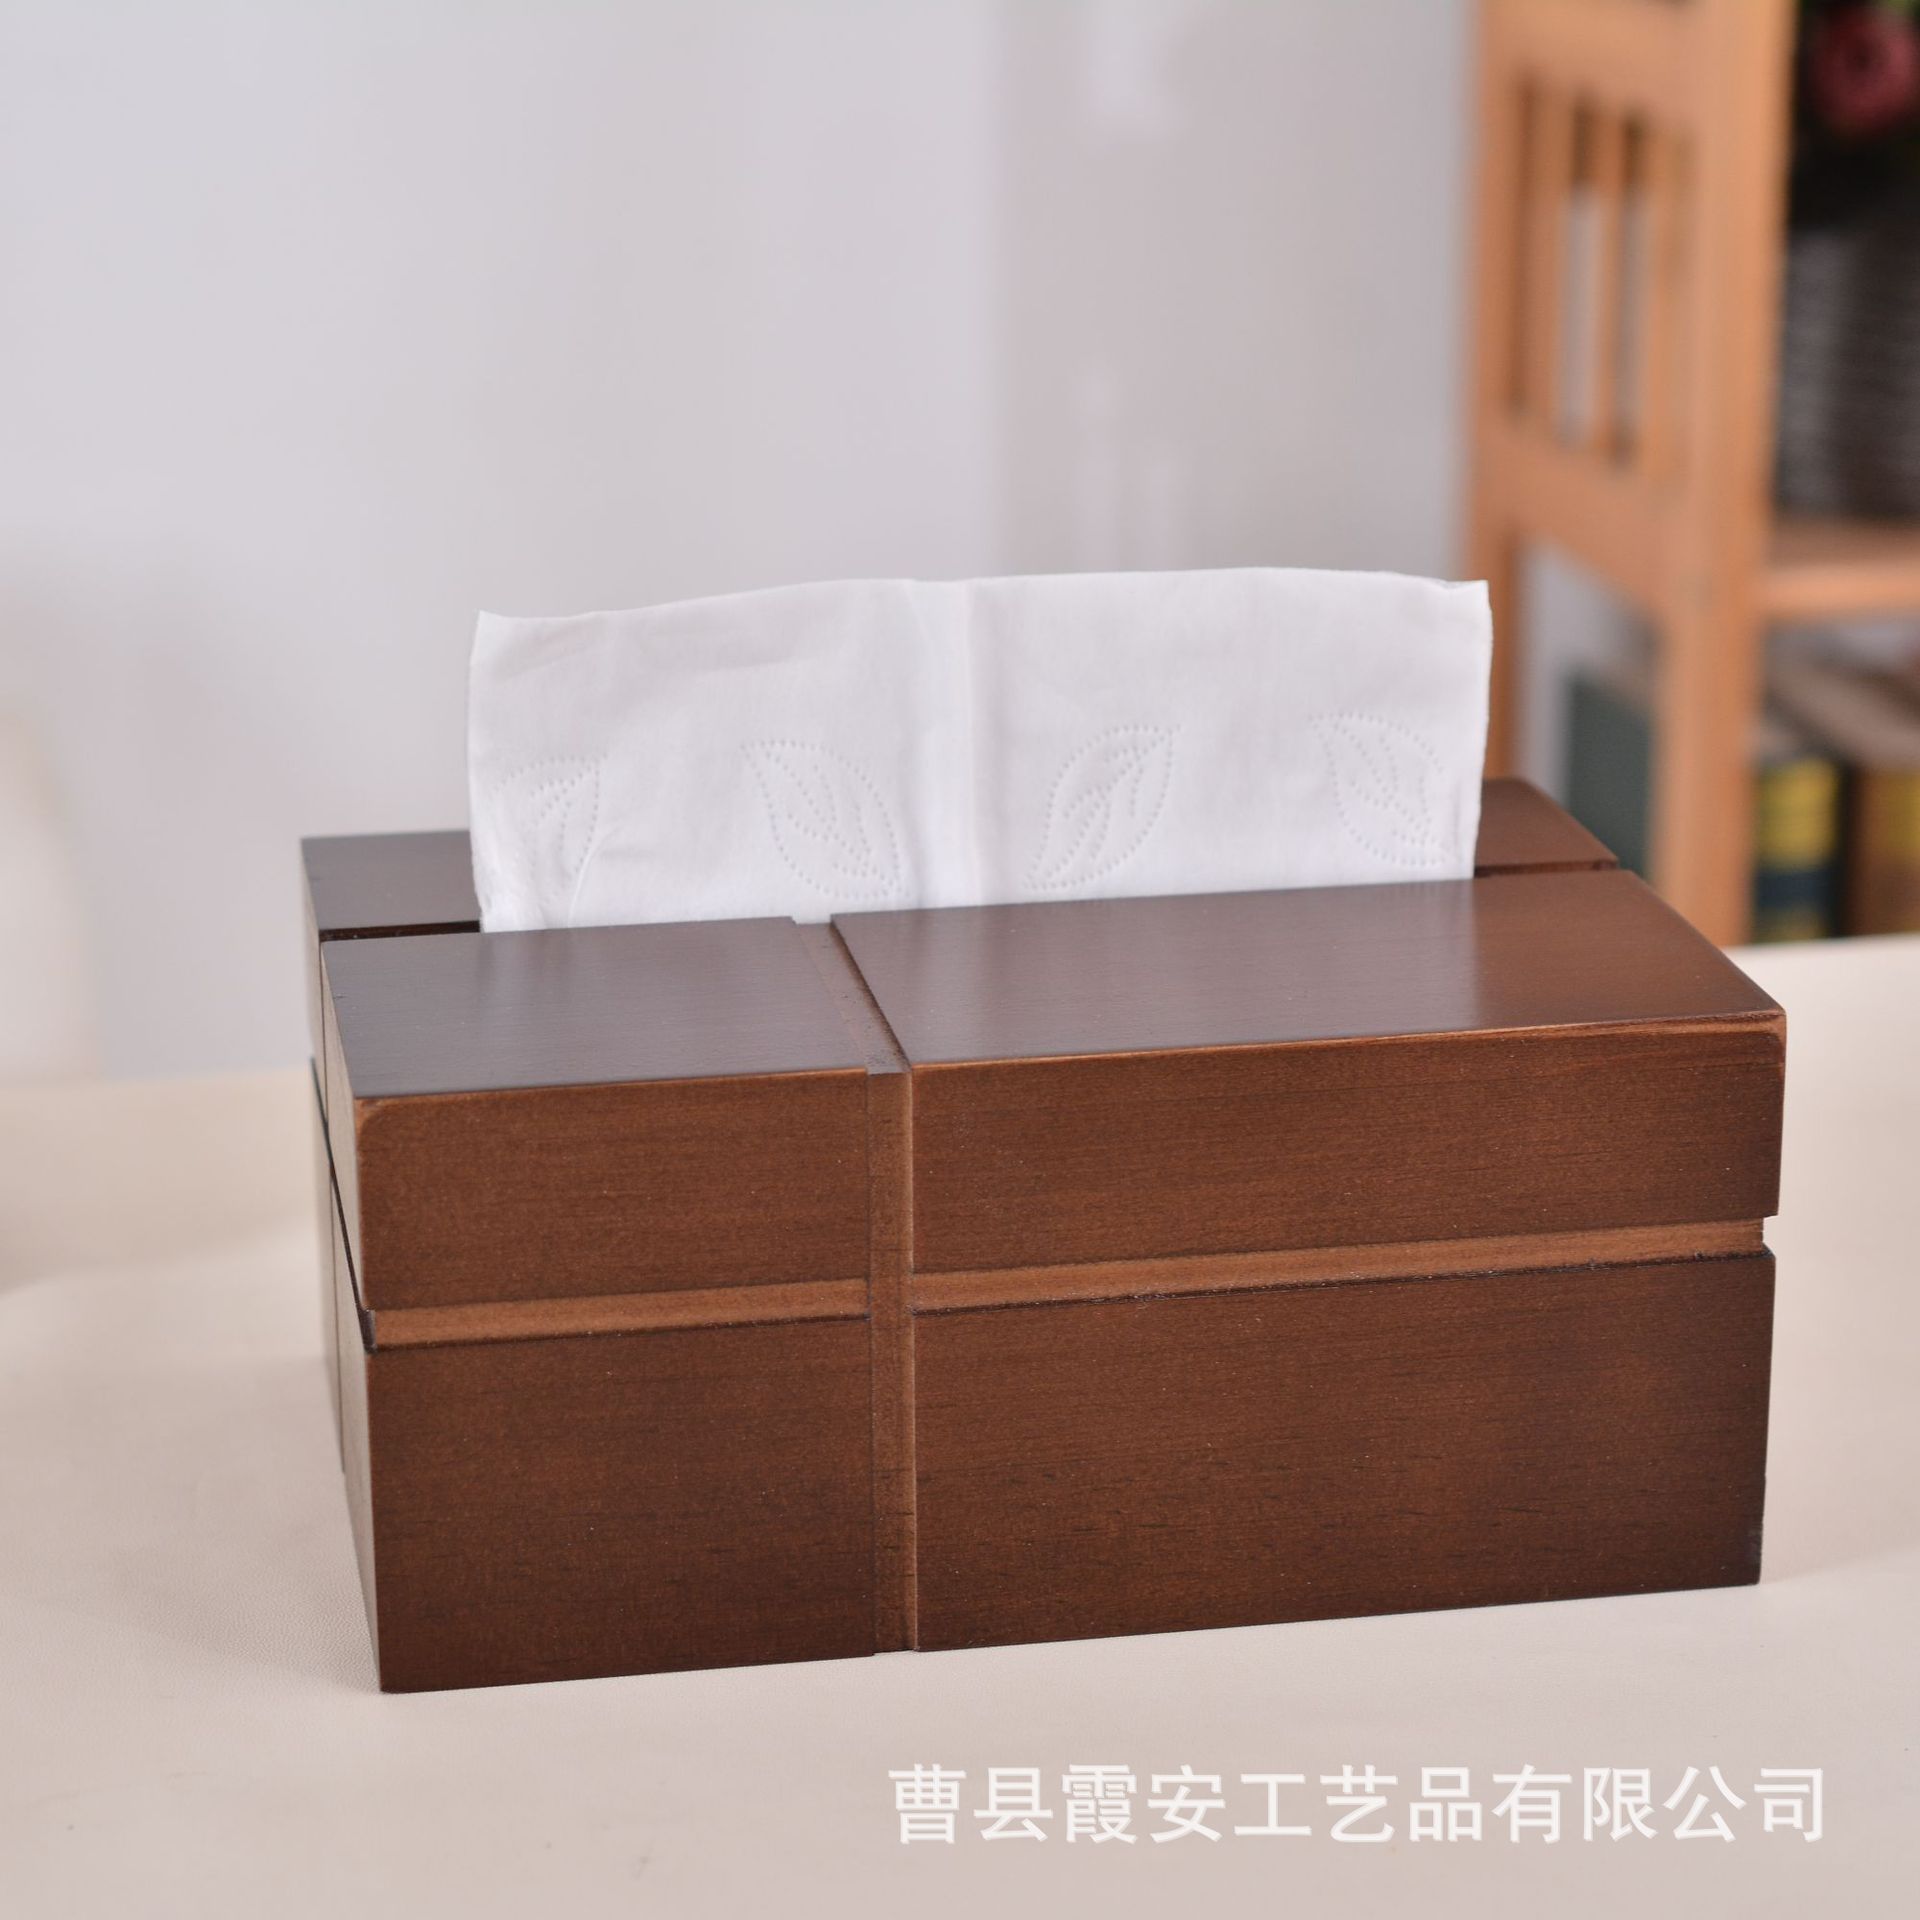 创意中式木质纸巾盒办公室家用客厅抽纸盒实木十字抽纸盒